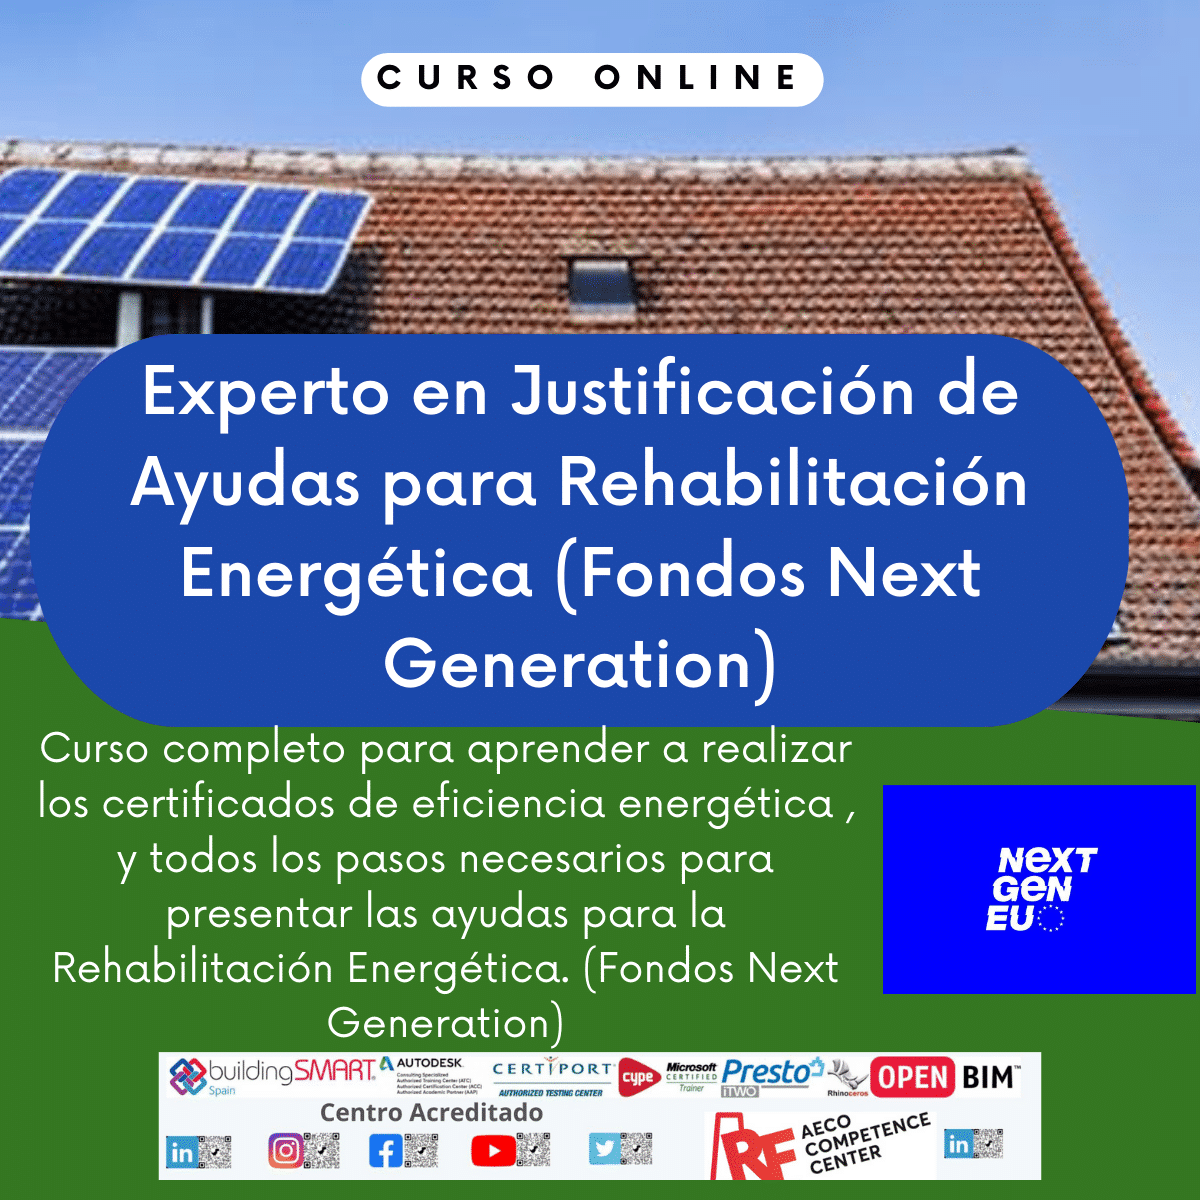 Aprende a obtener ayudas para la rehabilitación energética de edificios con nuestro curso online de Justificación de Ayudas para Rehabilitación Energética. ¡Fórmate con expertos y aprovecha los Fondos Next Generation!